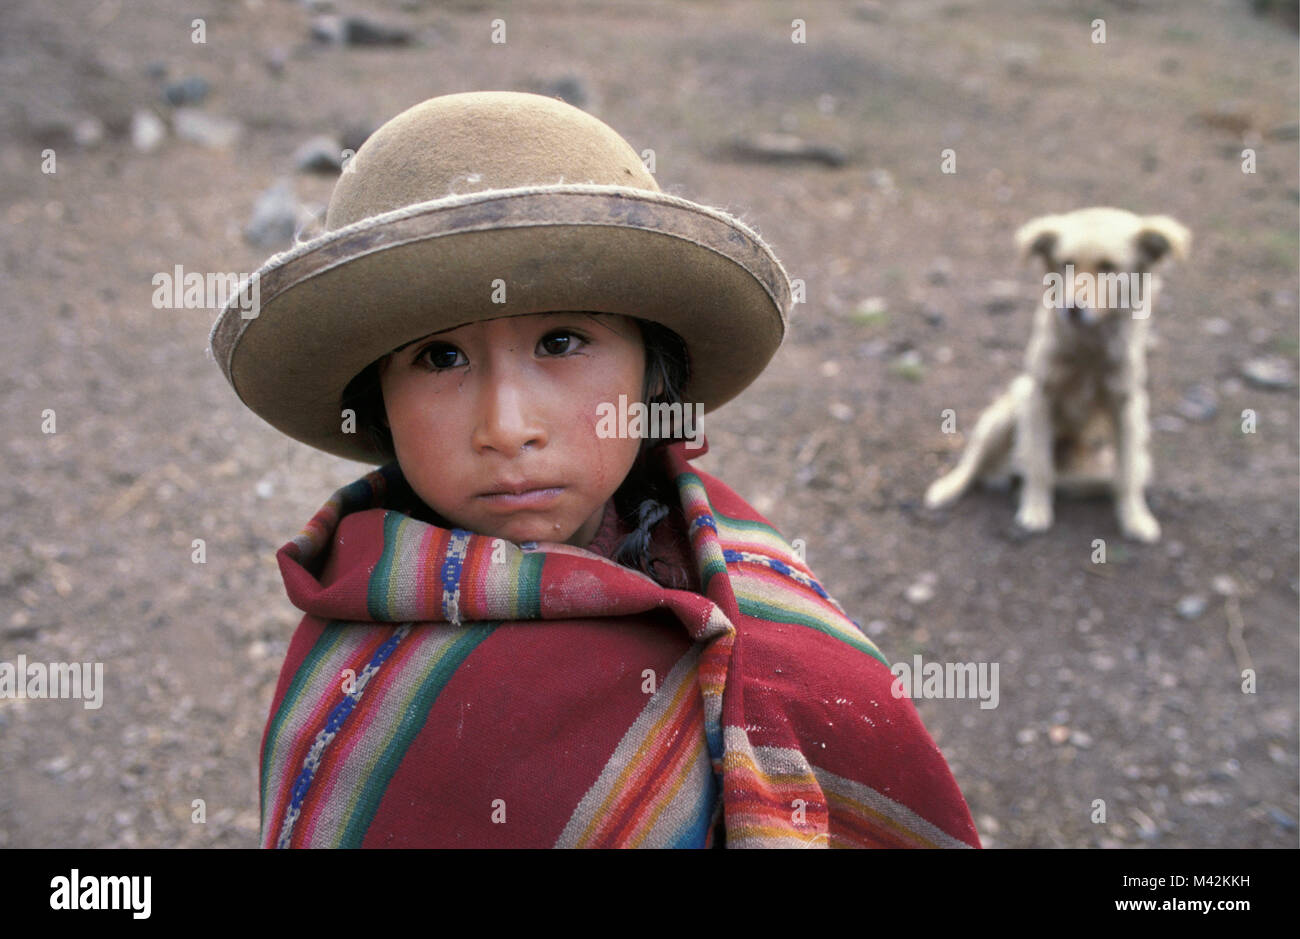 Perú. O Huilloc Willoc. Cerca de Ollantaytambo y Cusco, cusco, Chica en ropa tradicional en el campo. Retrato. Foto de stock